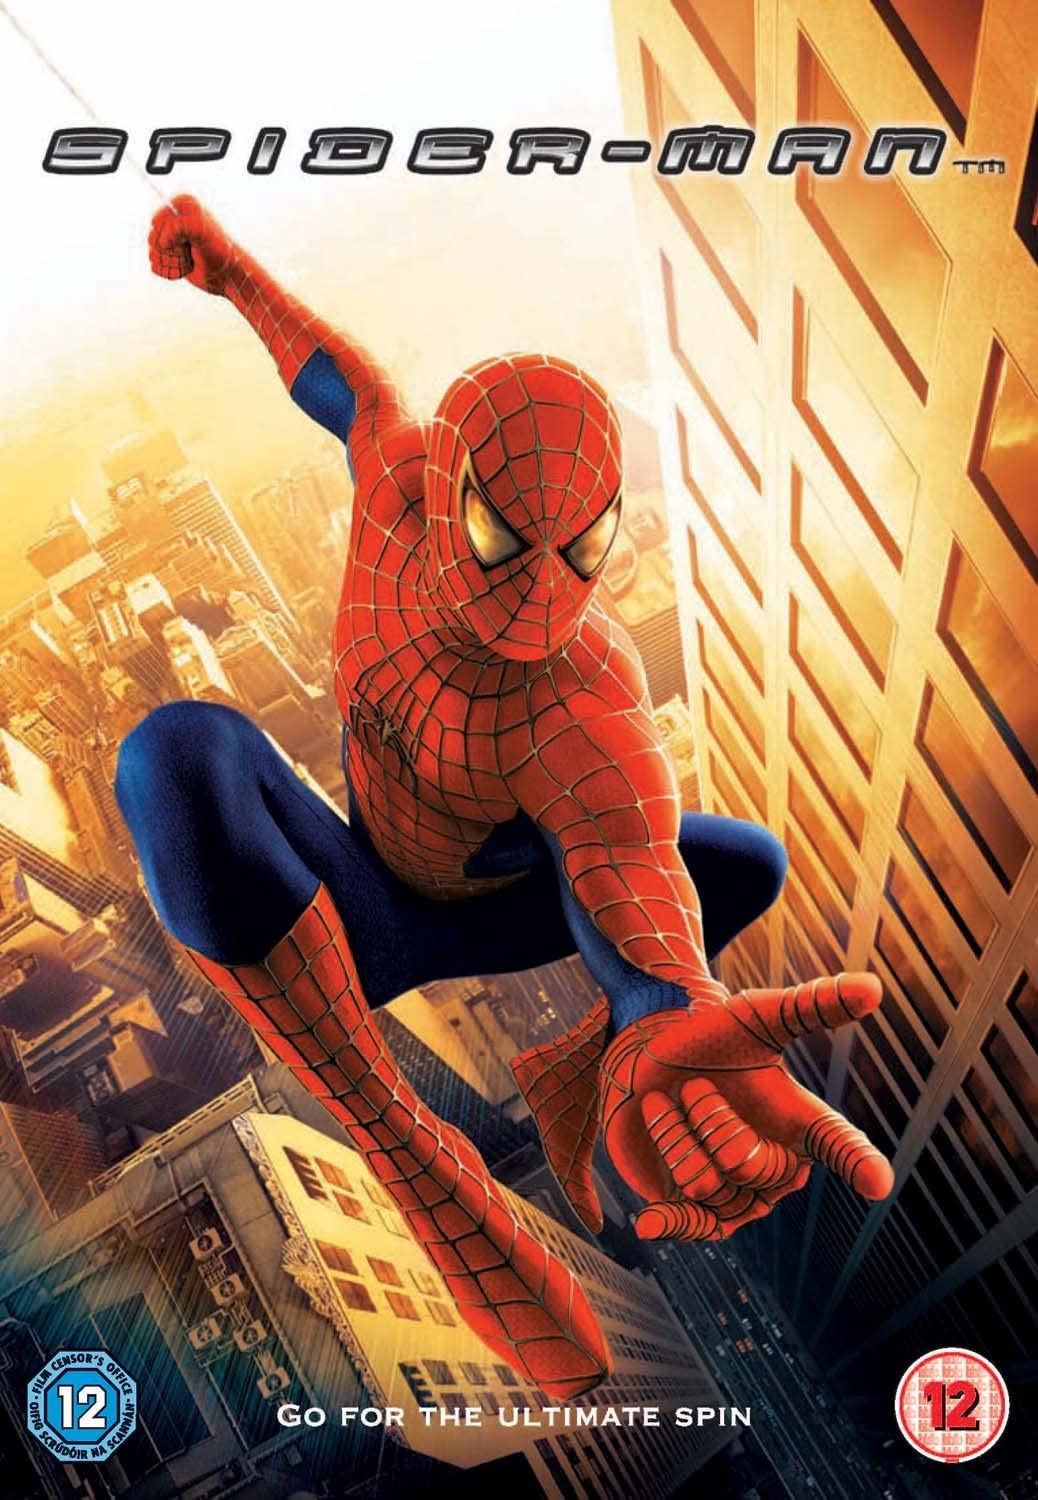 Spider-Man [2009] - Action/Adventure [DVD]